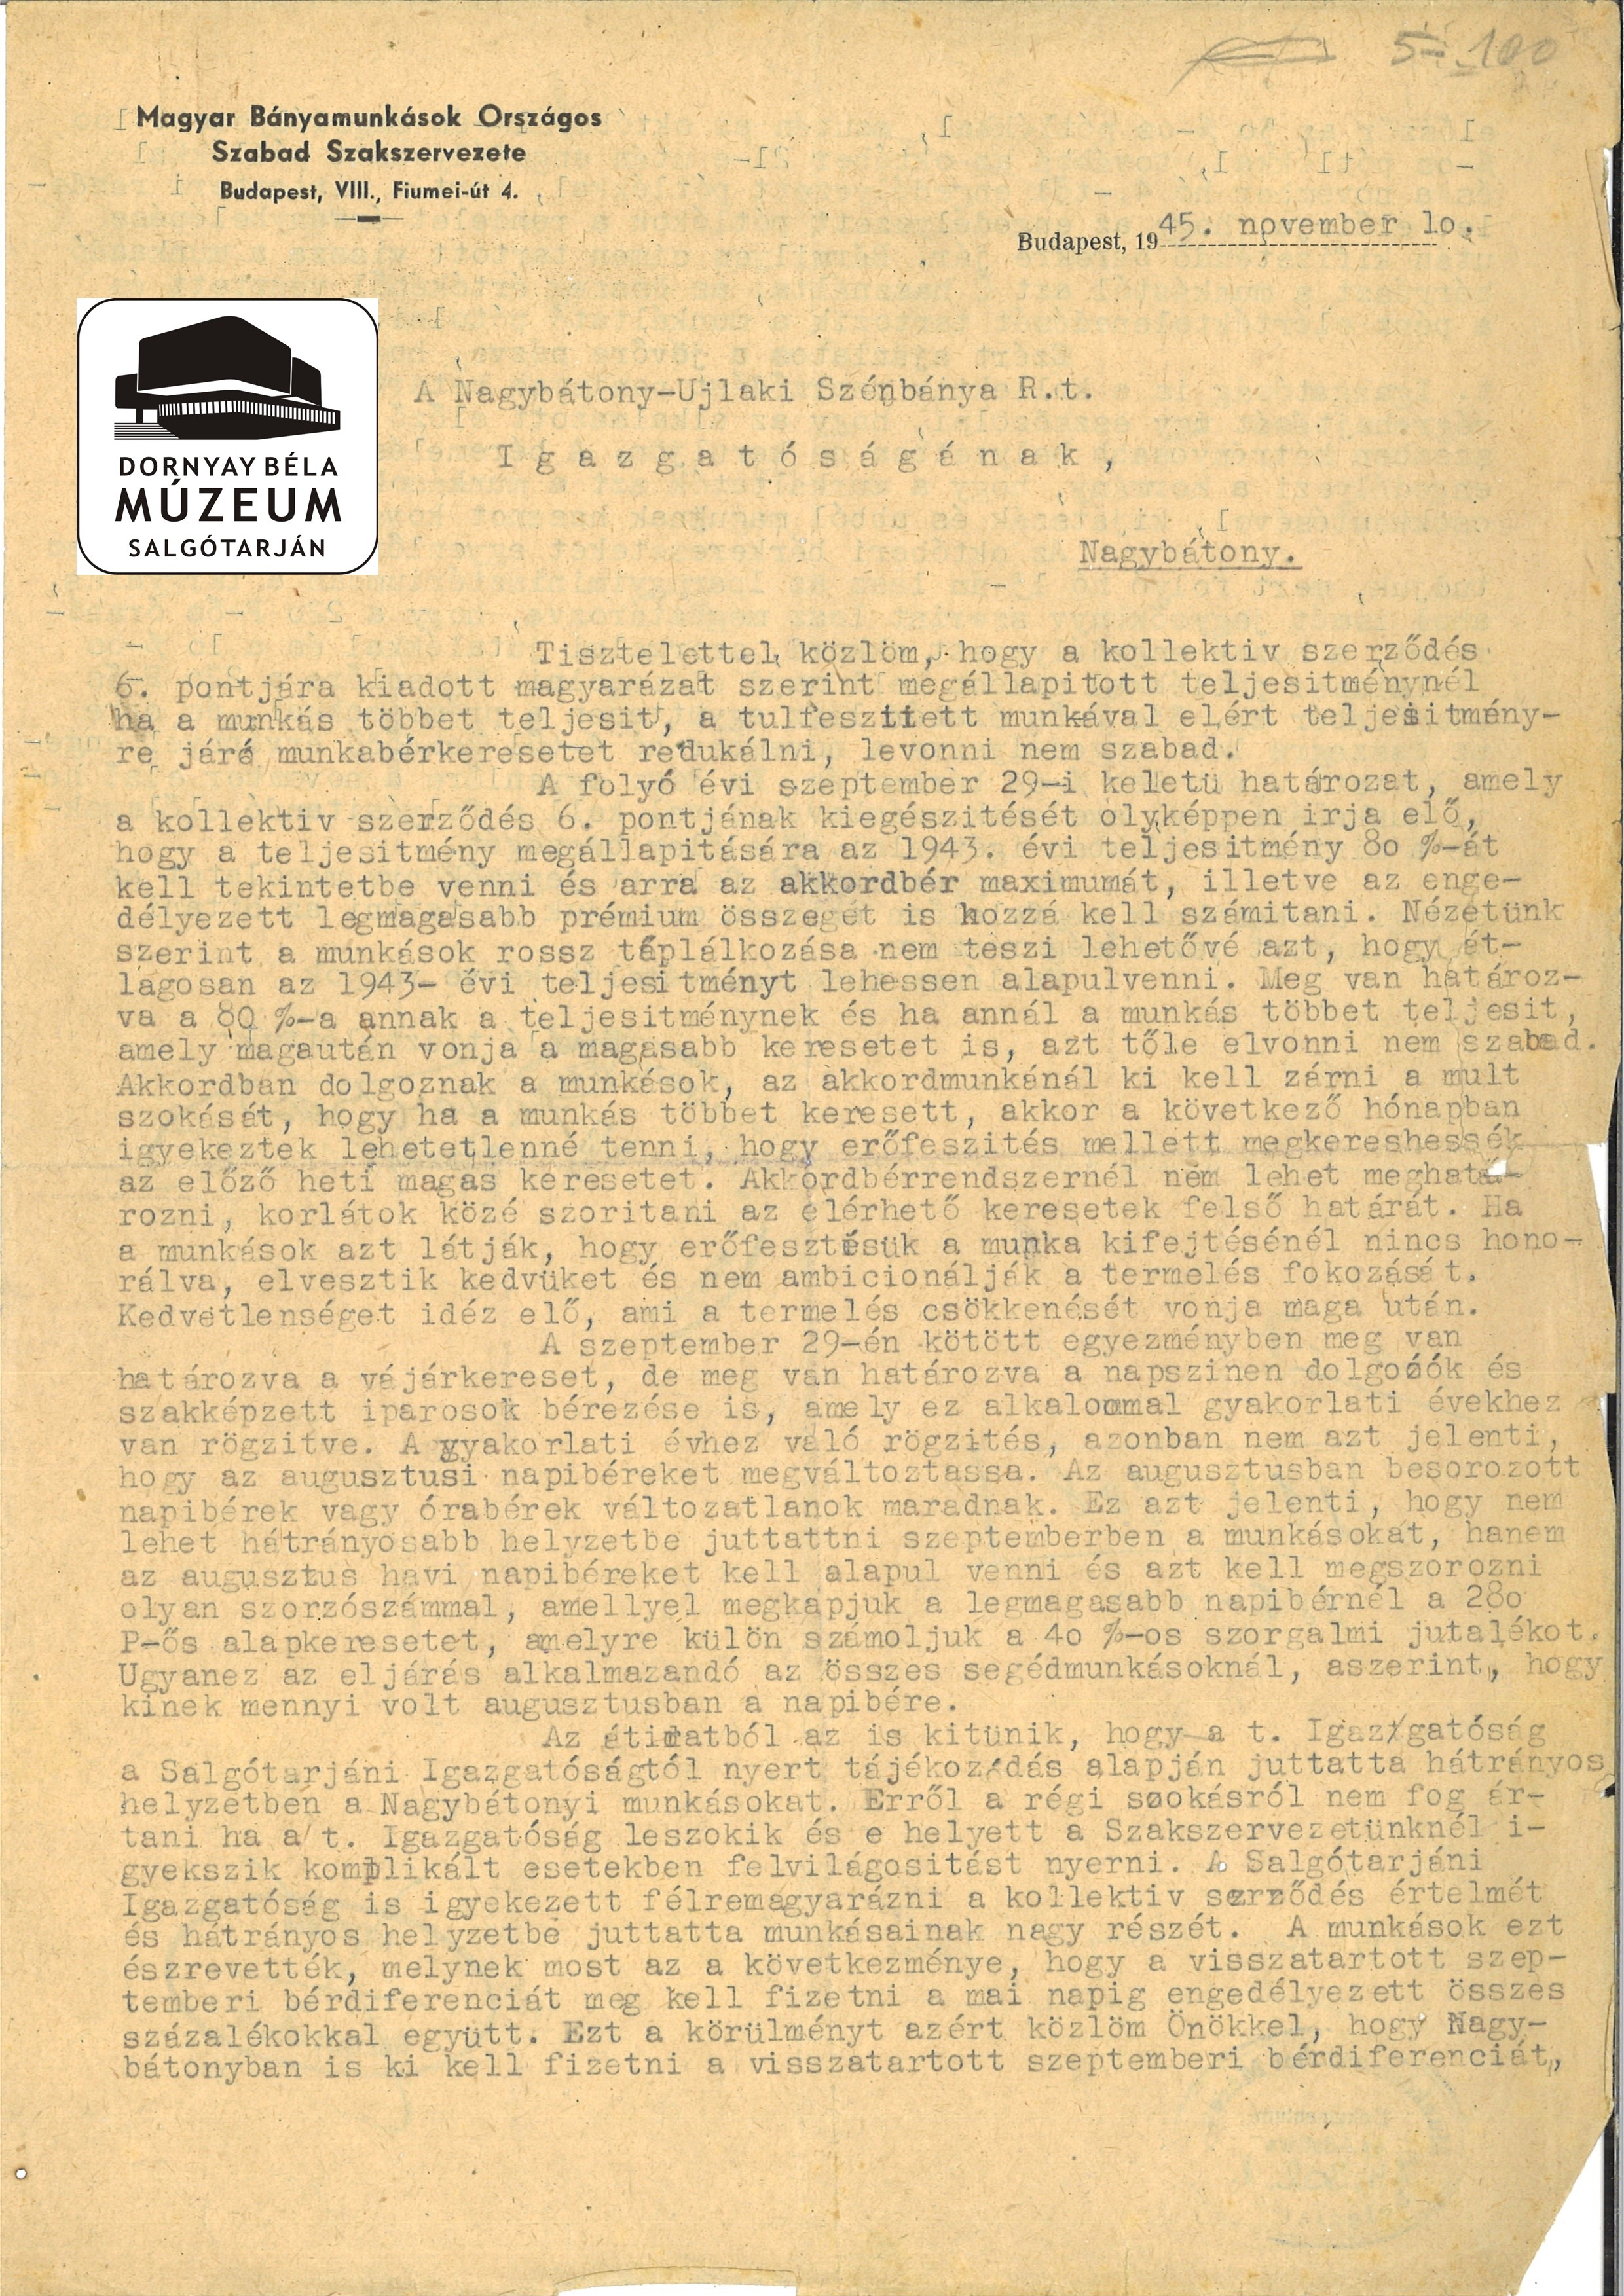 M.B.O.Sz.Sz. levele a Nagybátonyi Ig. a kollektív szerződés értelmezésről (Dornyay Béla Múzeum, Salgótarján CC BY-NC-SA)